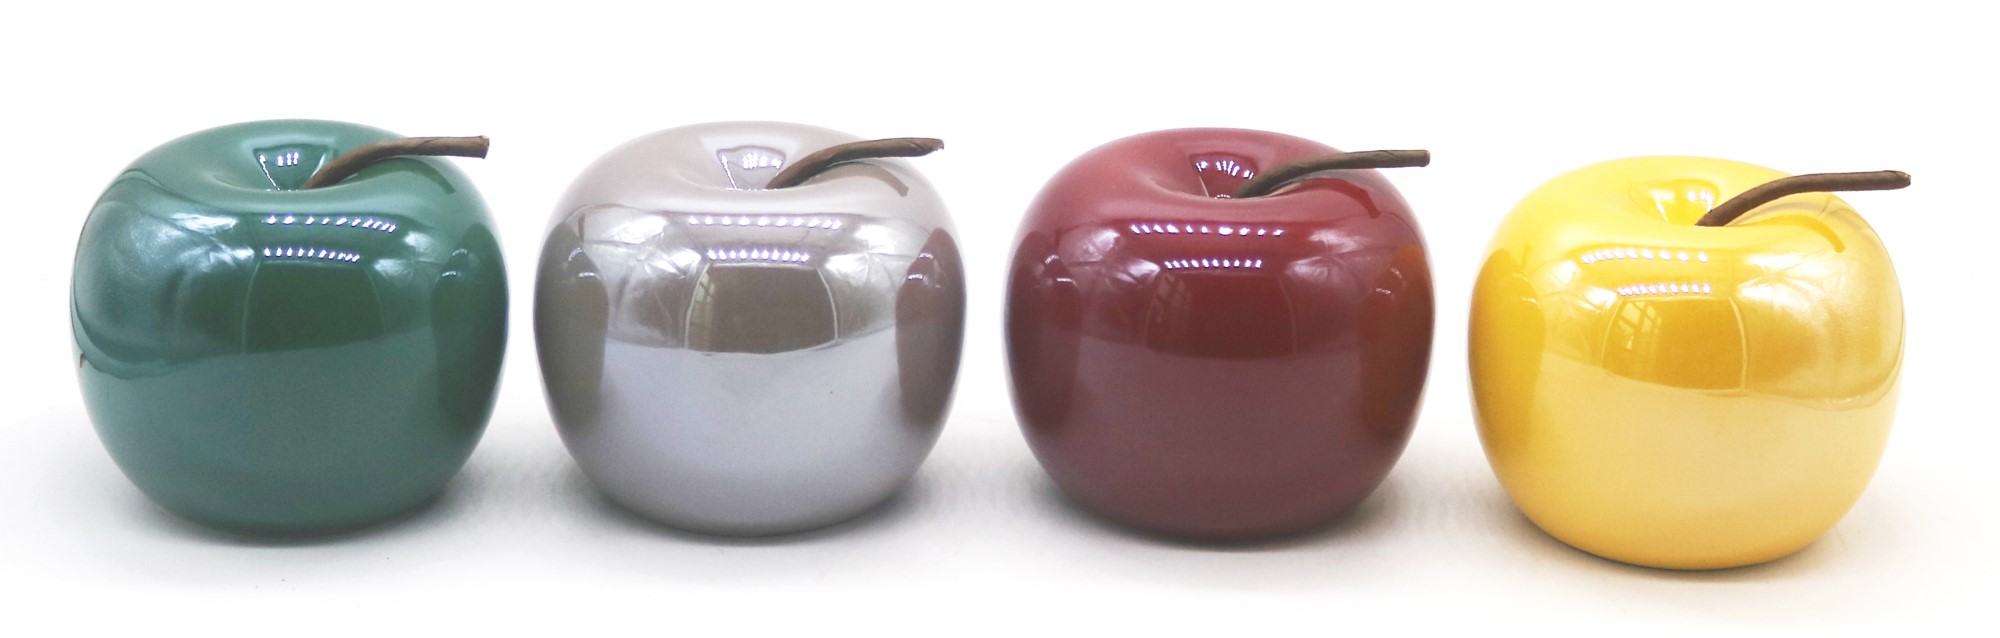 תפוח לקישוט. . מחיר 6.90 שקלים קרדיט מקס סטוק (custom)